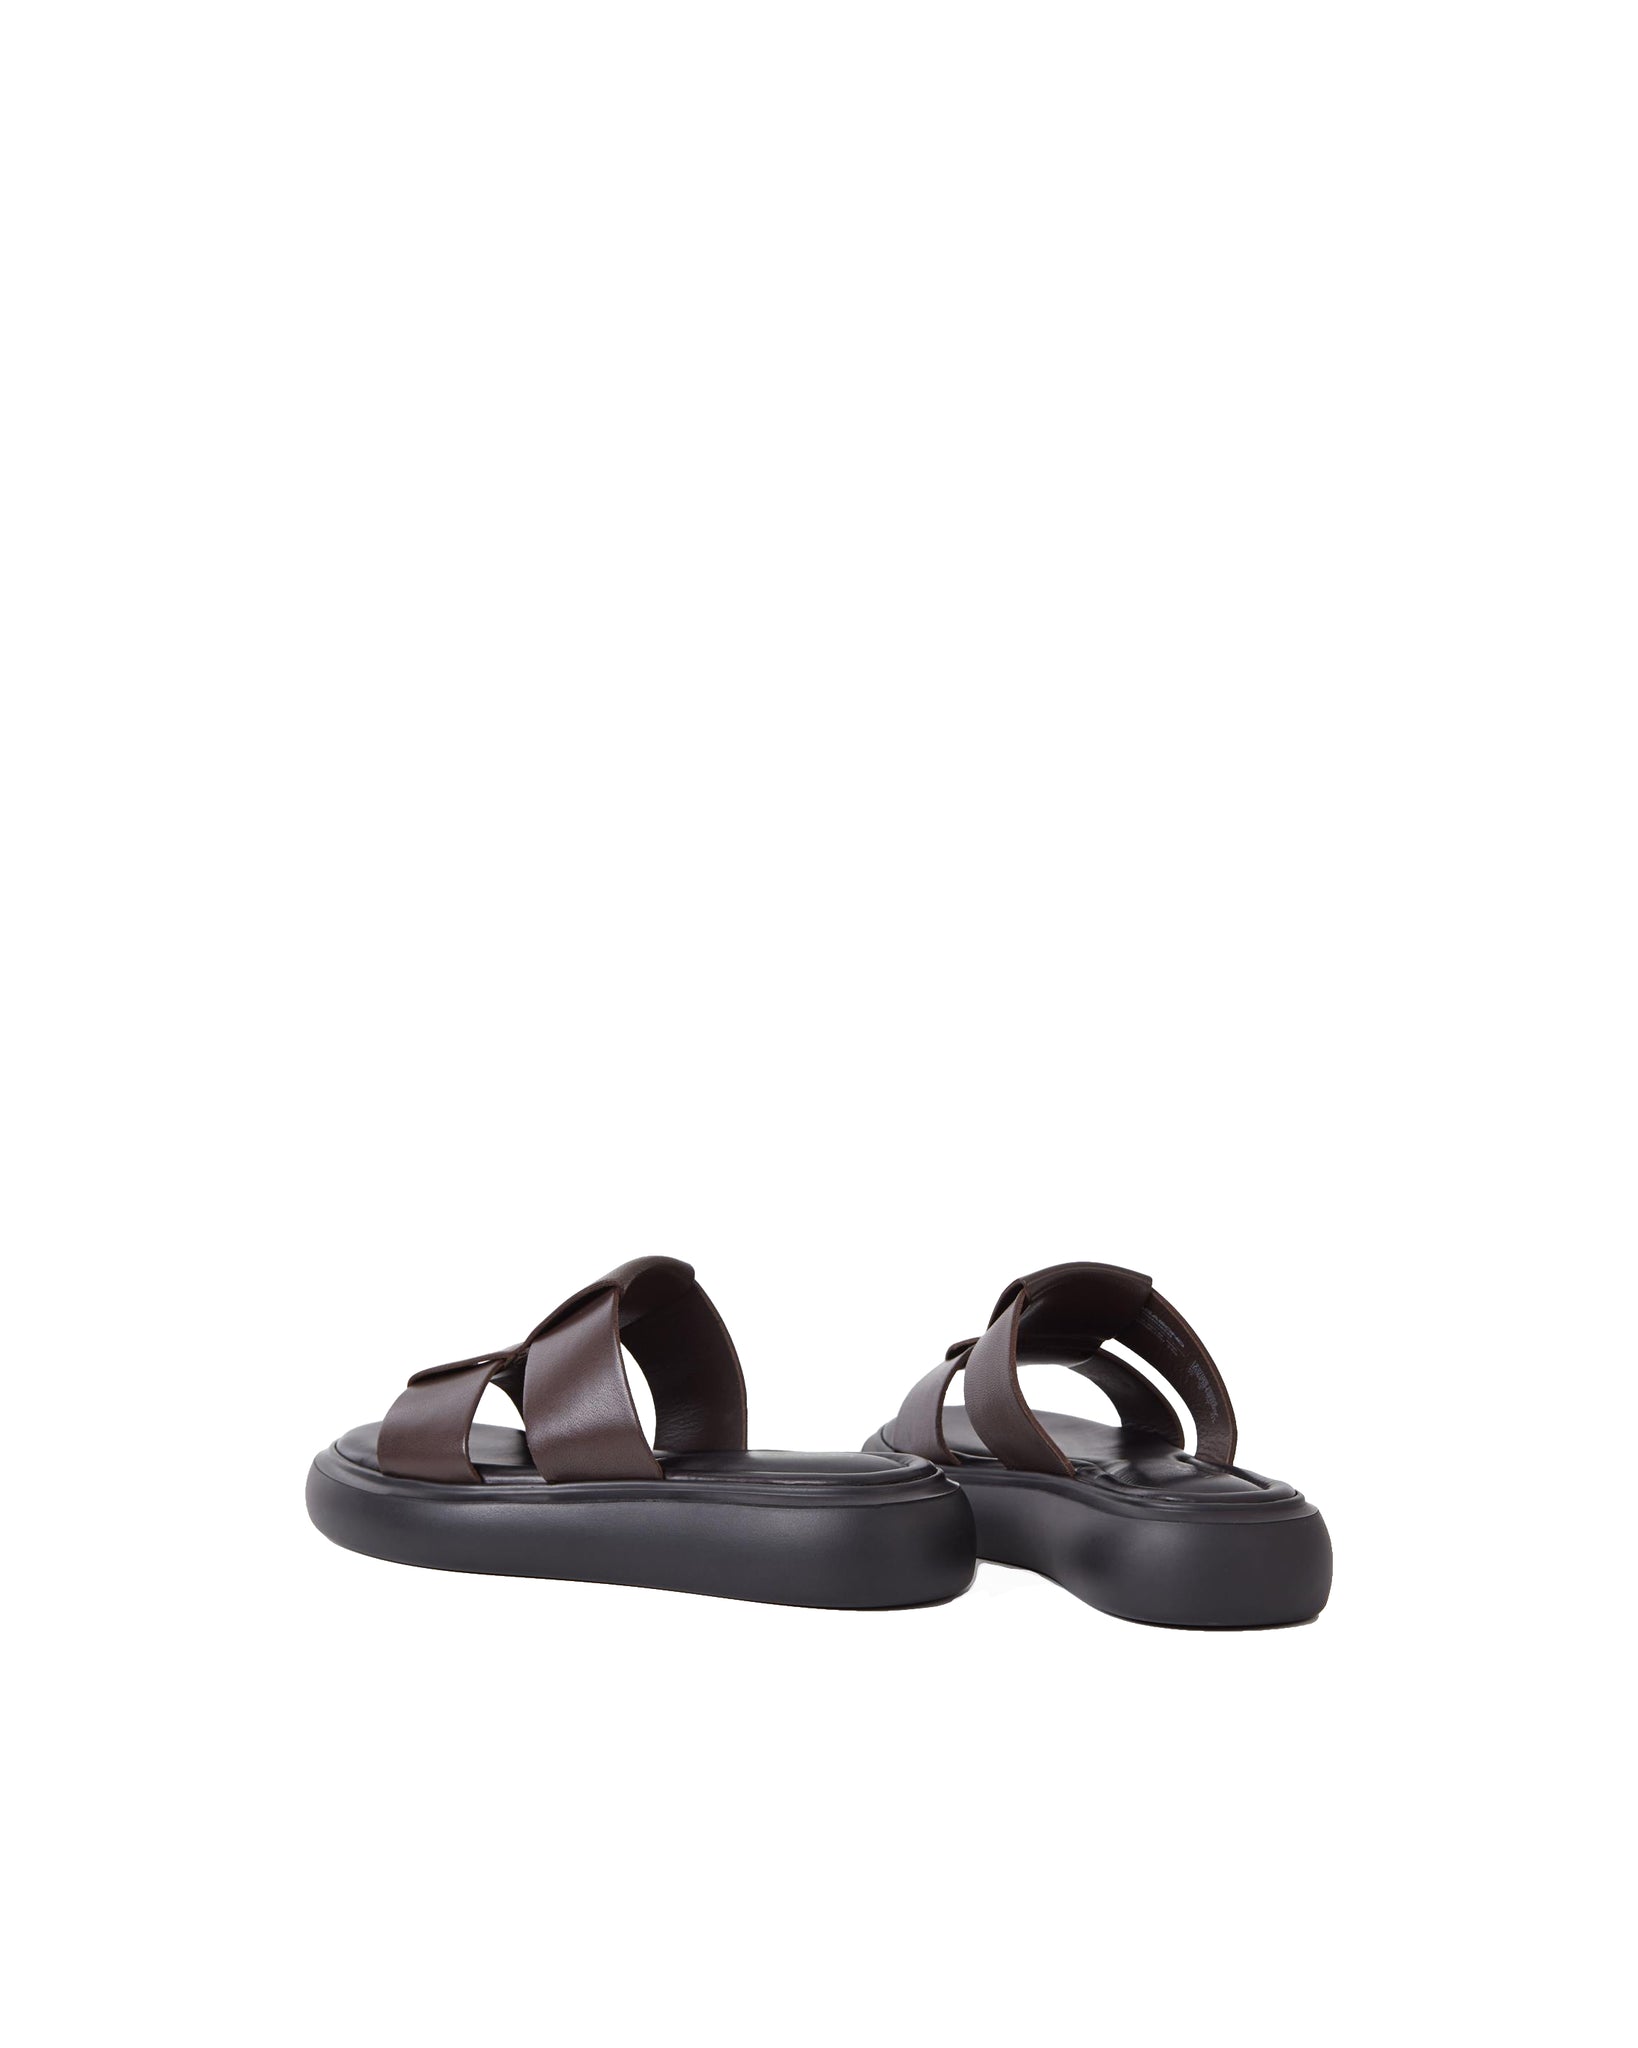 Blenda (5519-201-35) Sandals - Dark Brown Leather